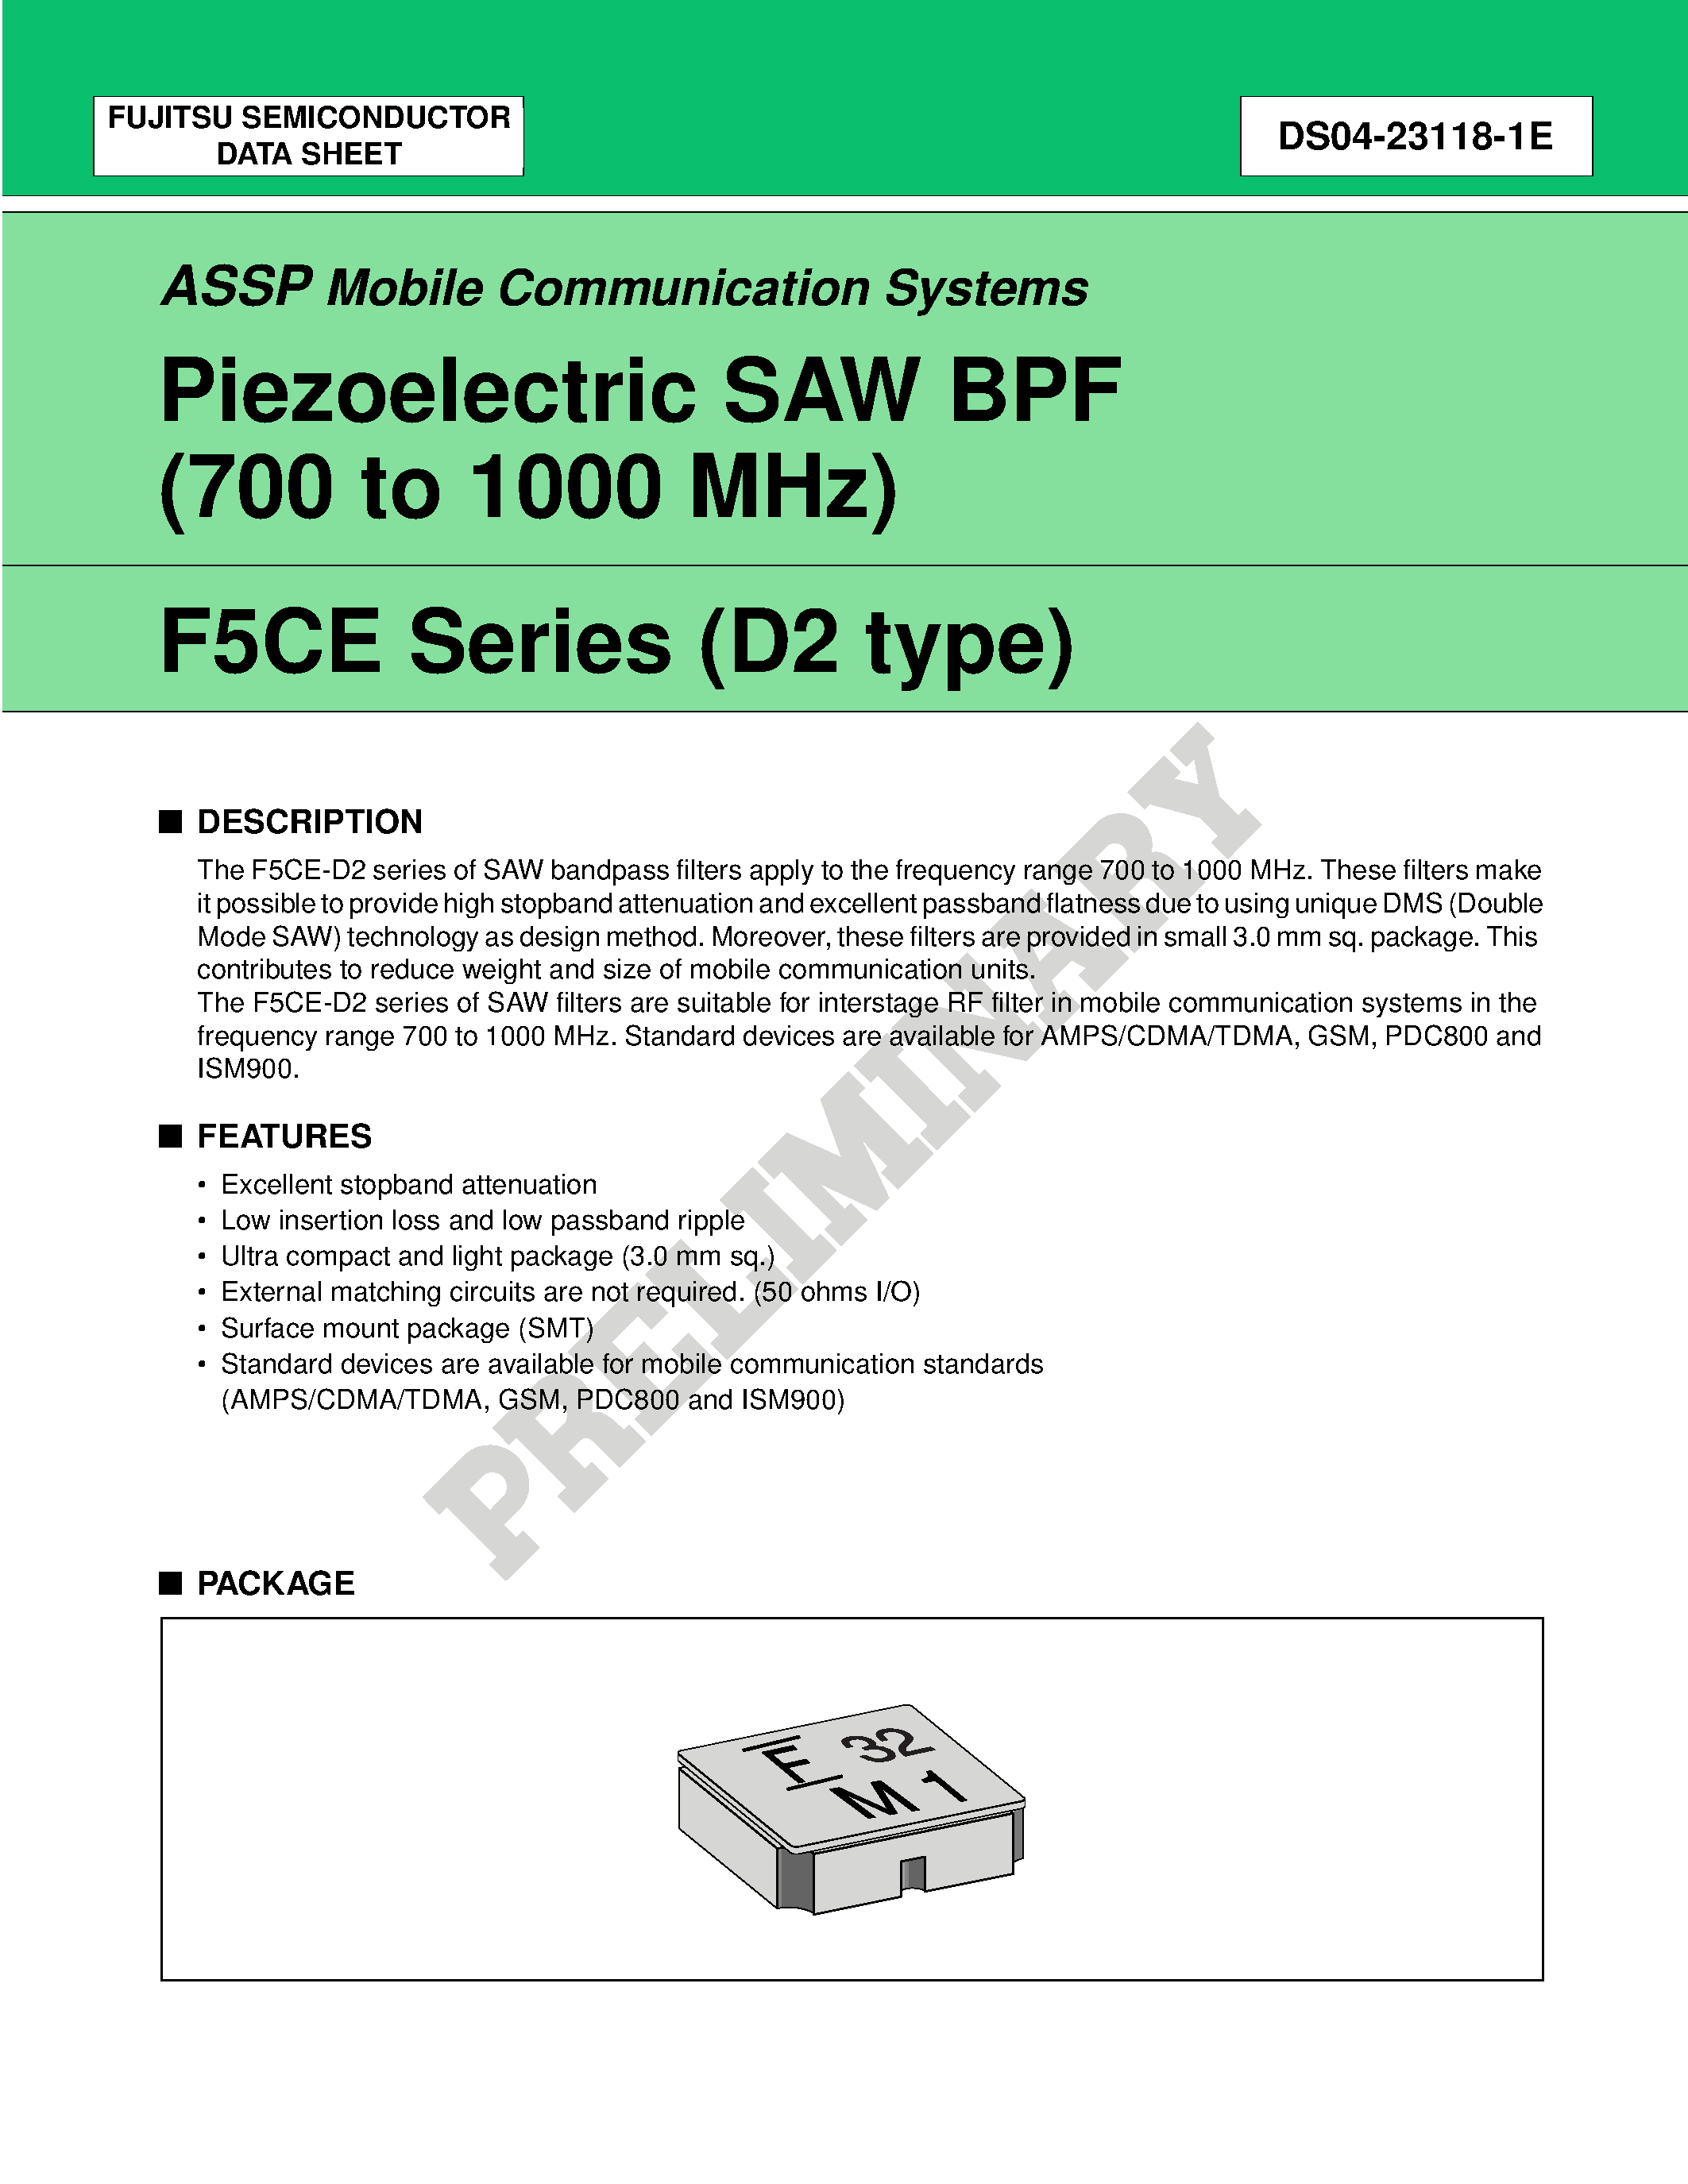 Datasheet FAR-F5CE-950M00-K201-U - Piezoelectric SAW BPF (700 to 1700 MHz) page 1